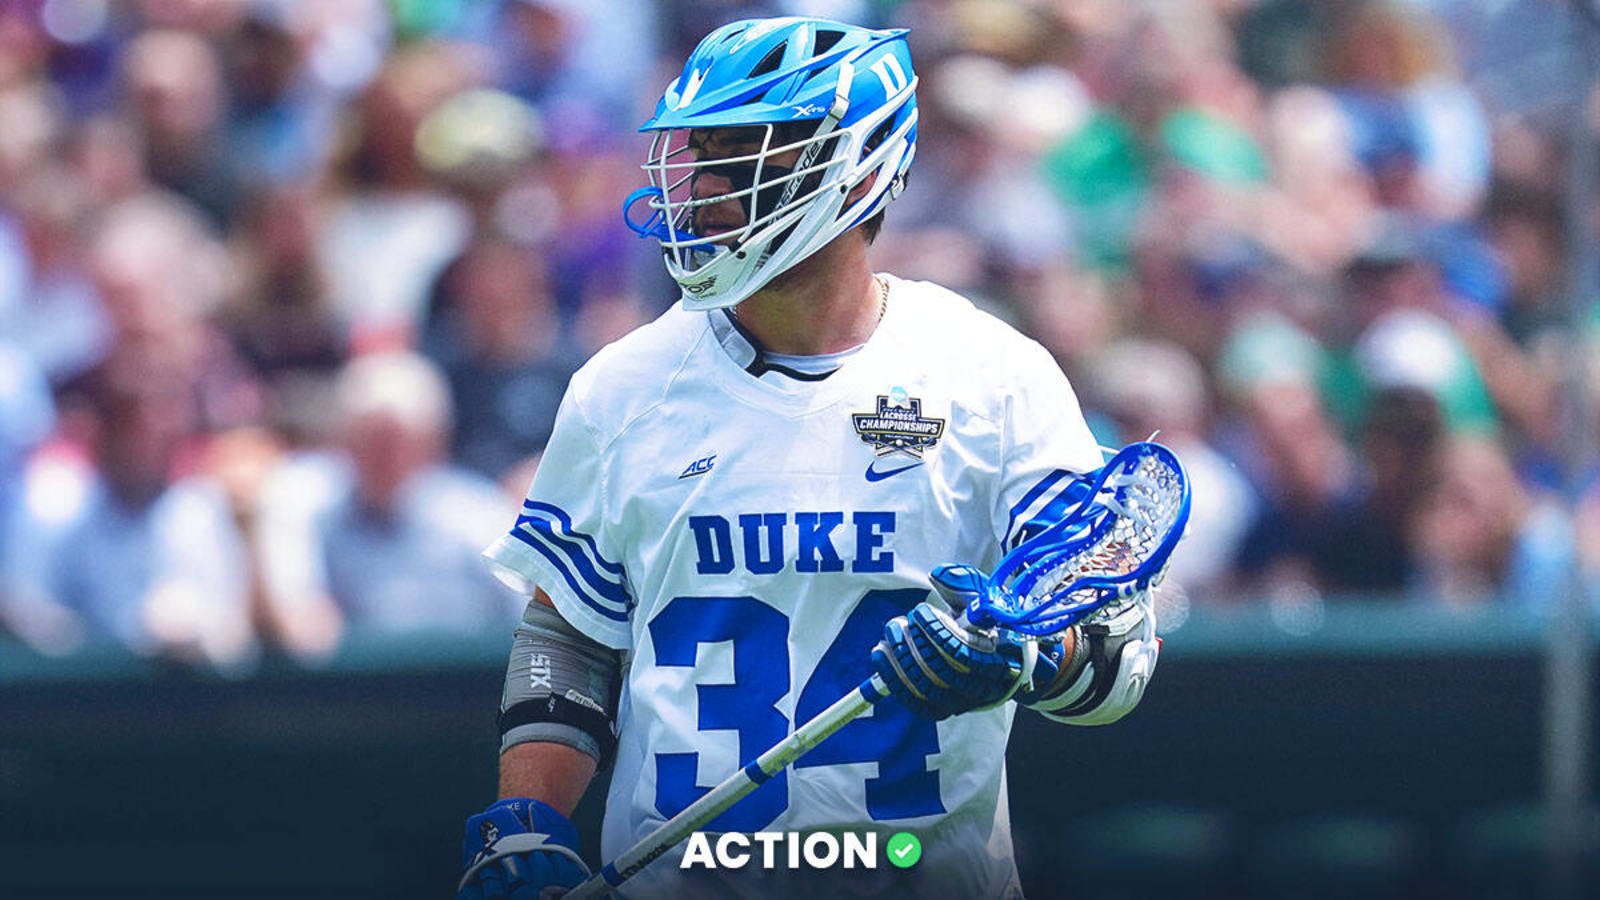 NCAA men’s lacrosse quarterfinal picks: College lacrosse best bets for Duke vs. Maryland